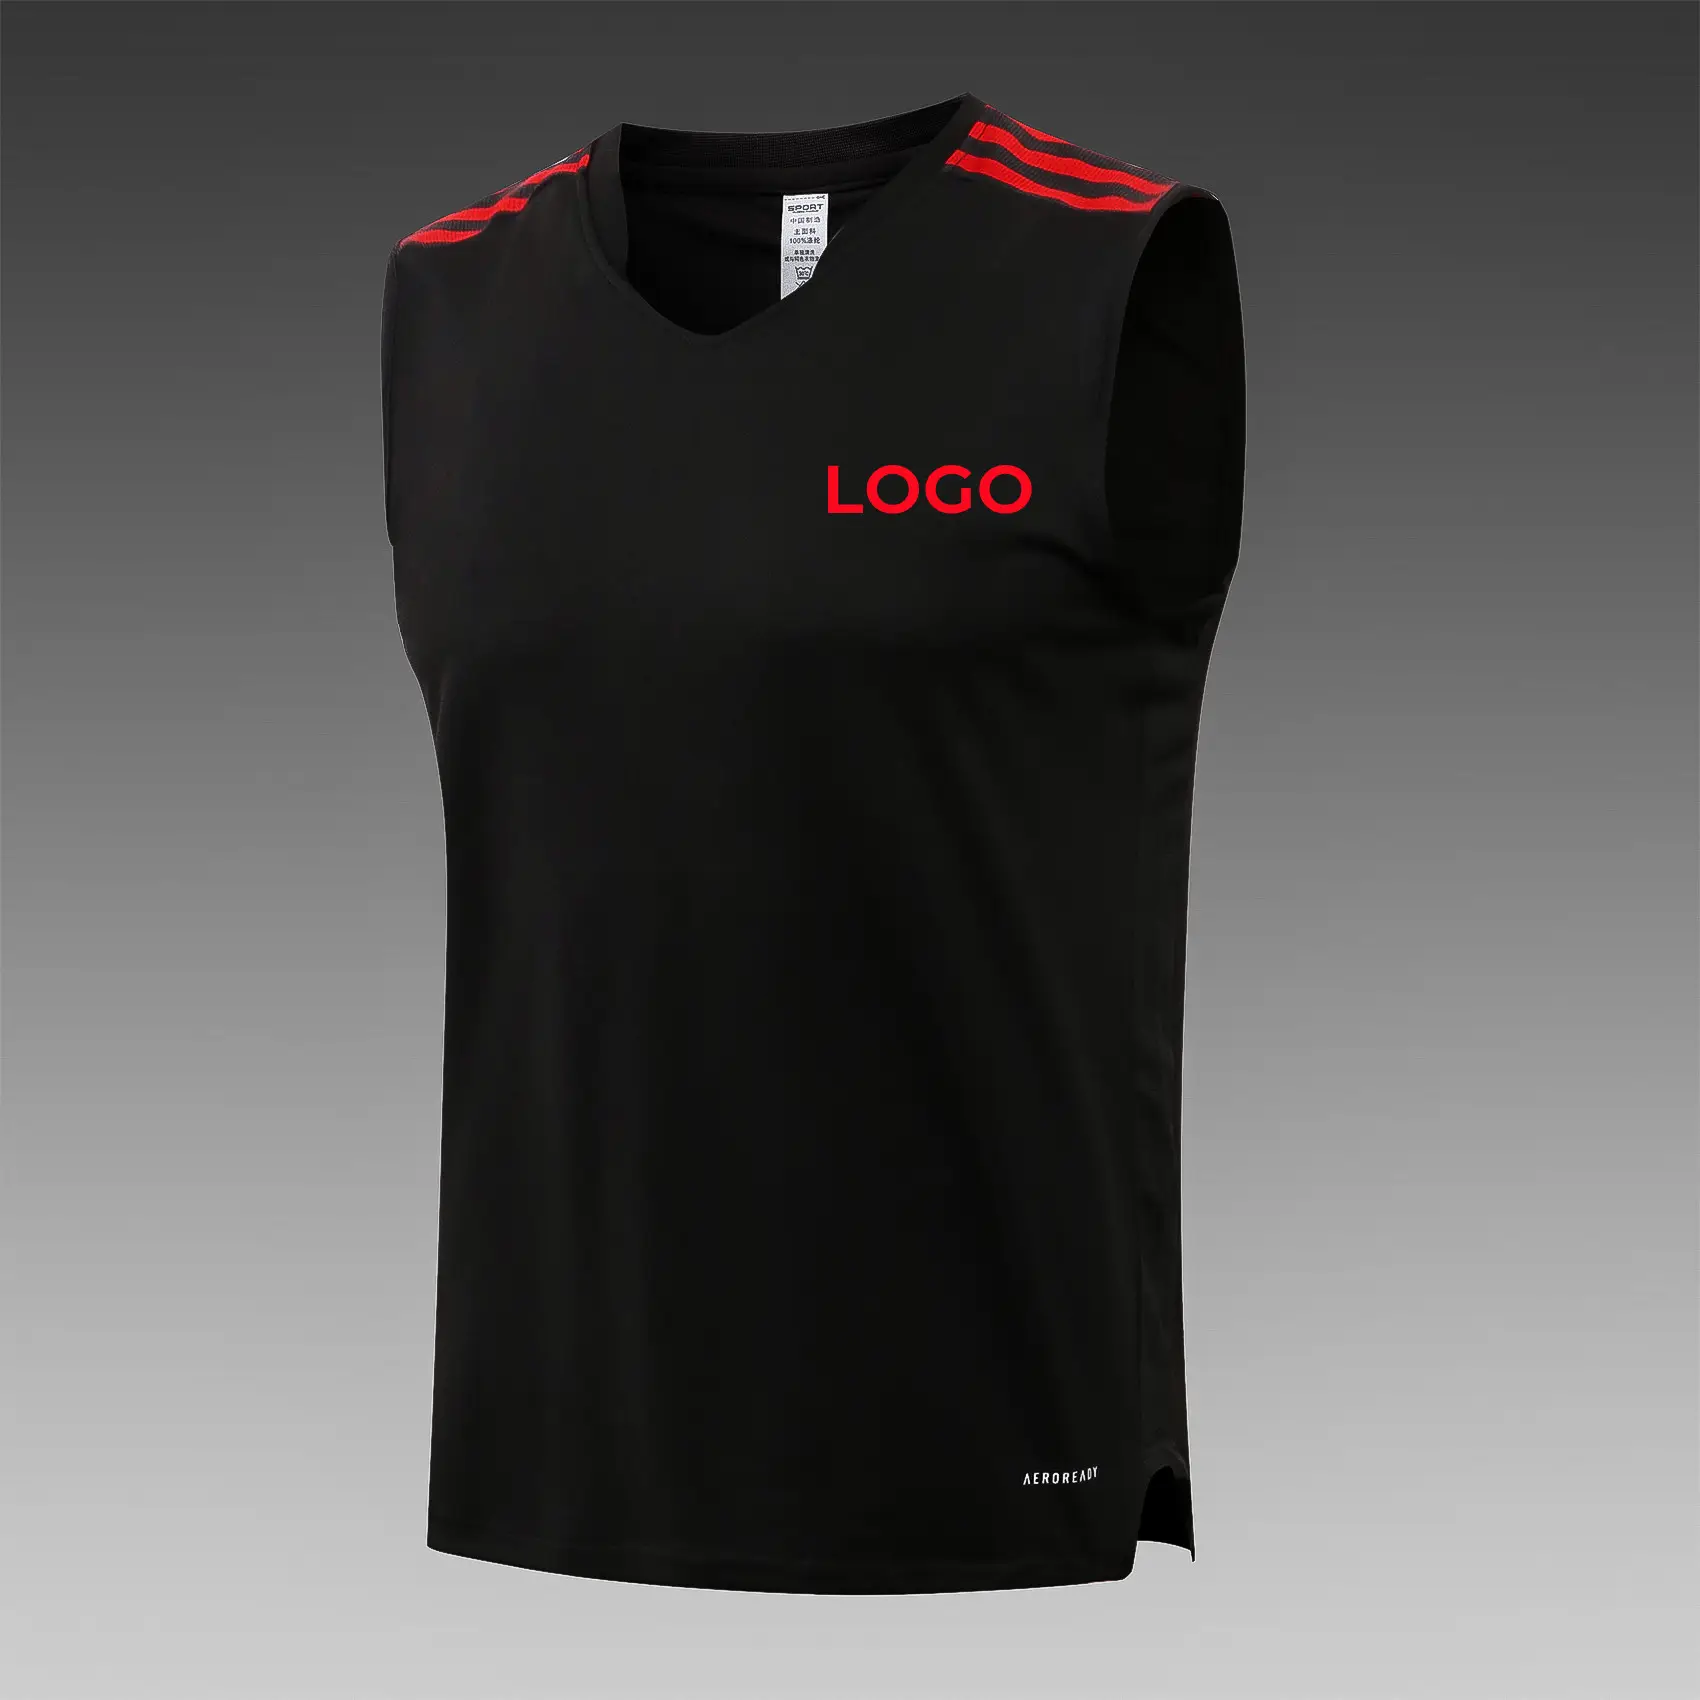 חדש עיצוב חולצות אימון איש כדורגל פוליאסטר ספורט אפוד מותאם אישית צוות ג 'רזי אפוד כדורגל אימון סינר כדורגל ג' רזי